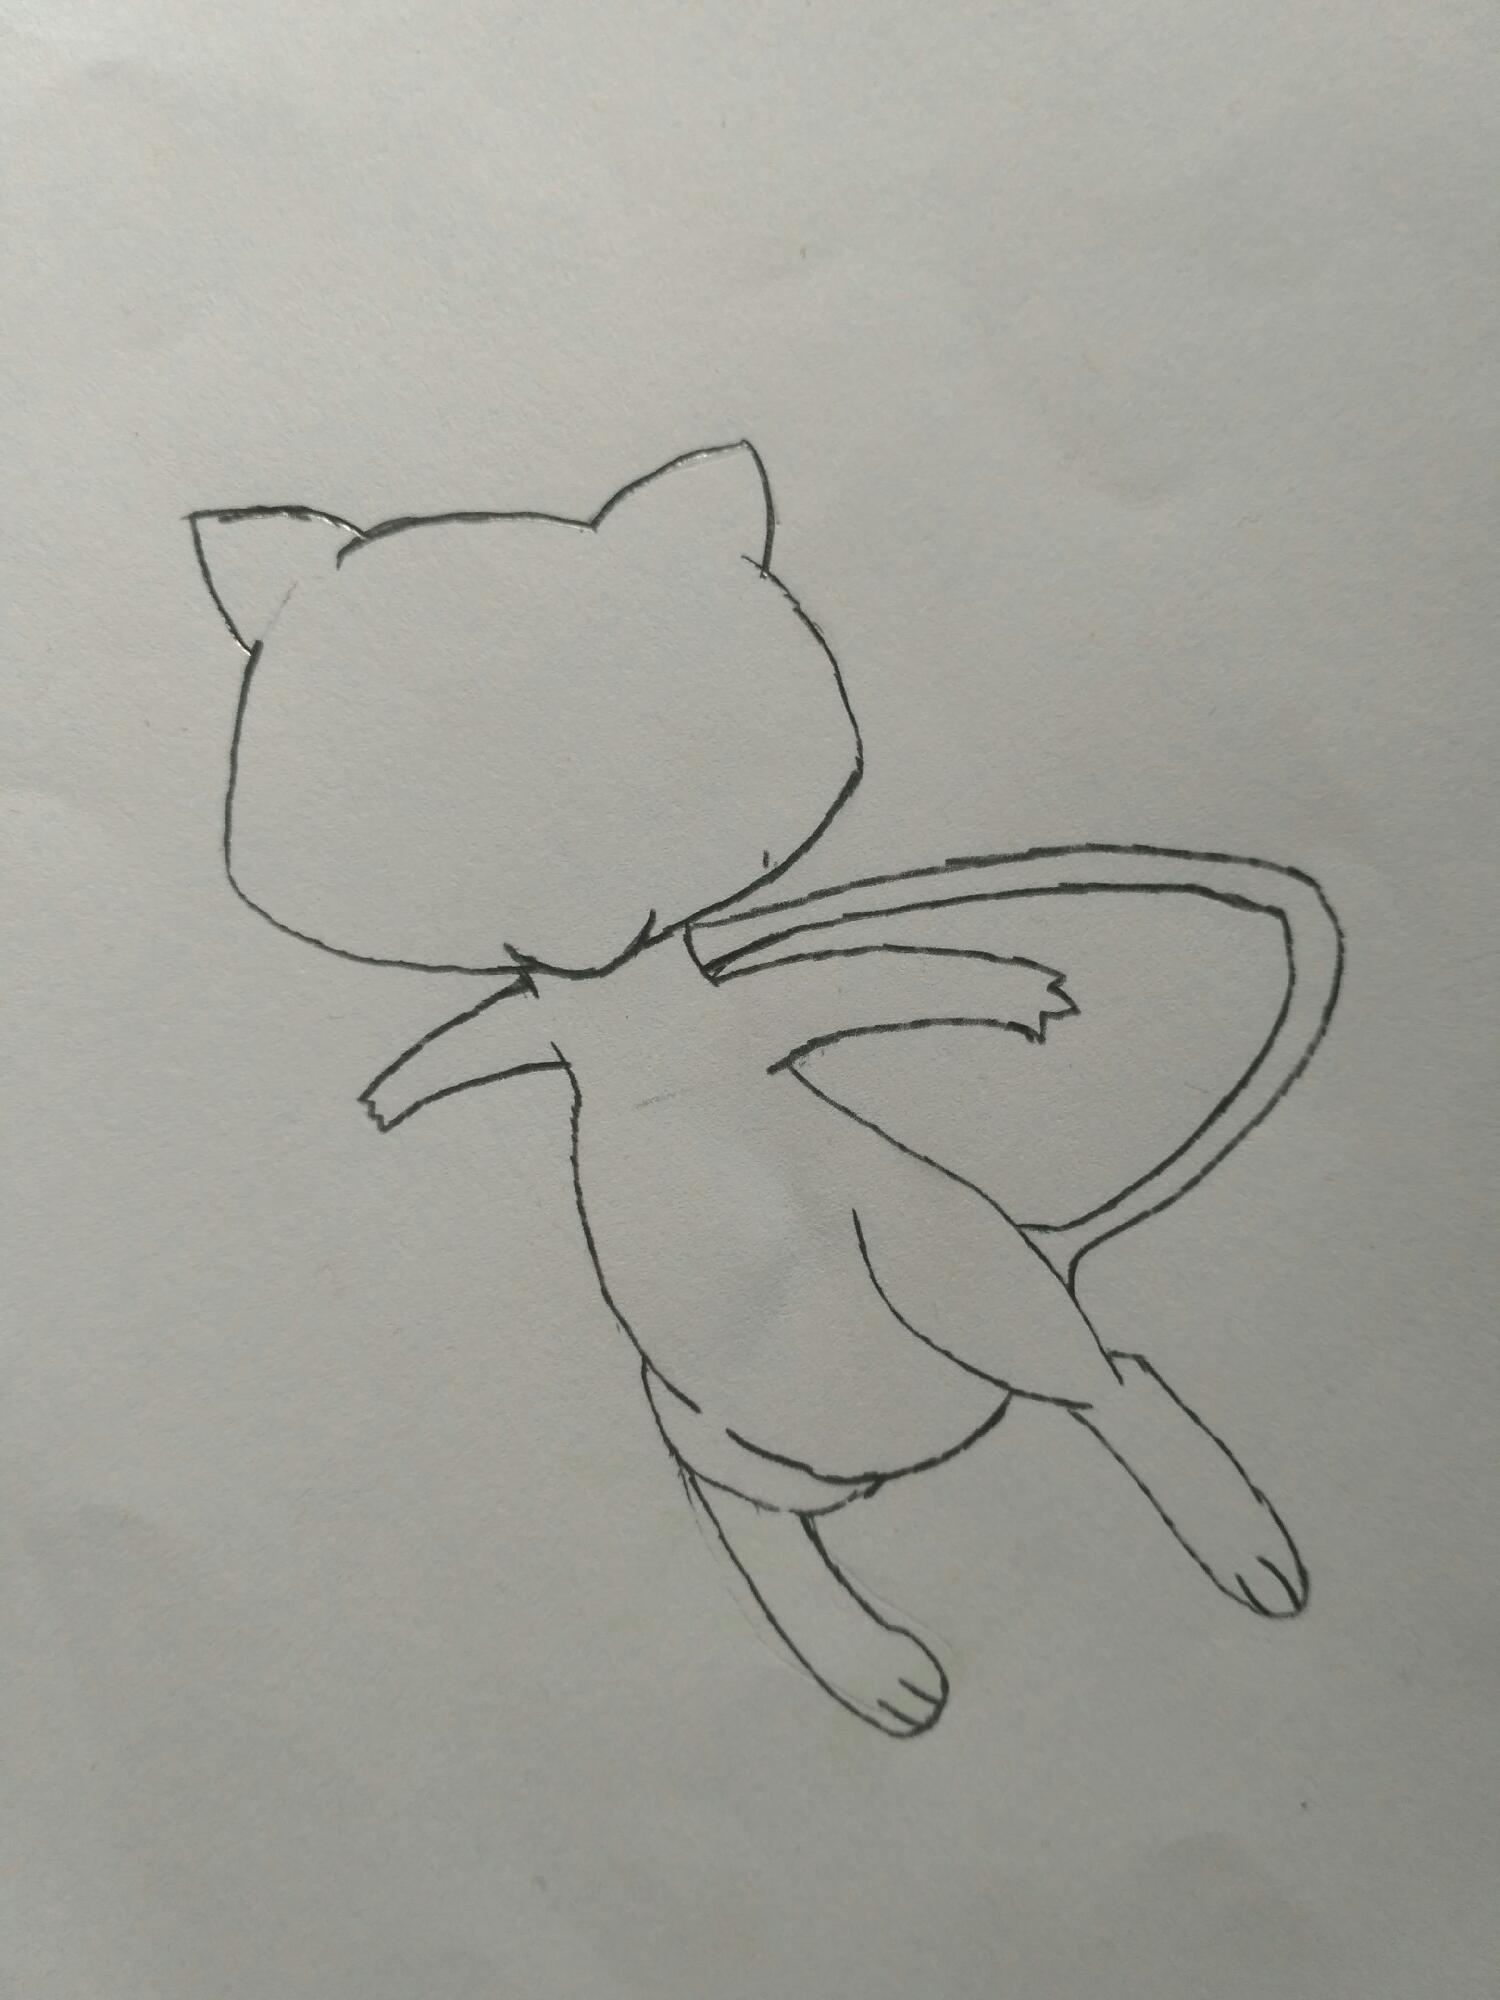 How to Draw Mew - Pokemon Unite 